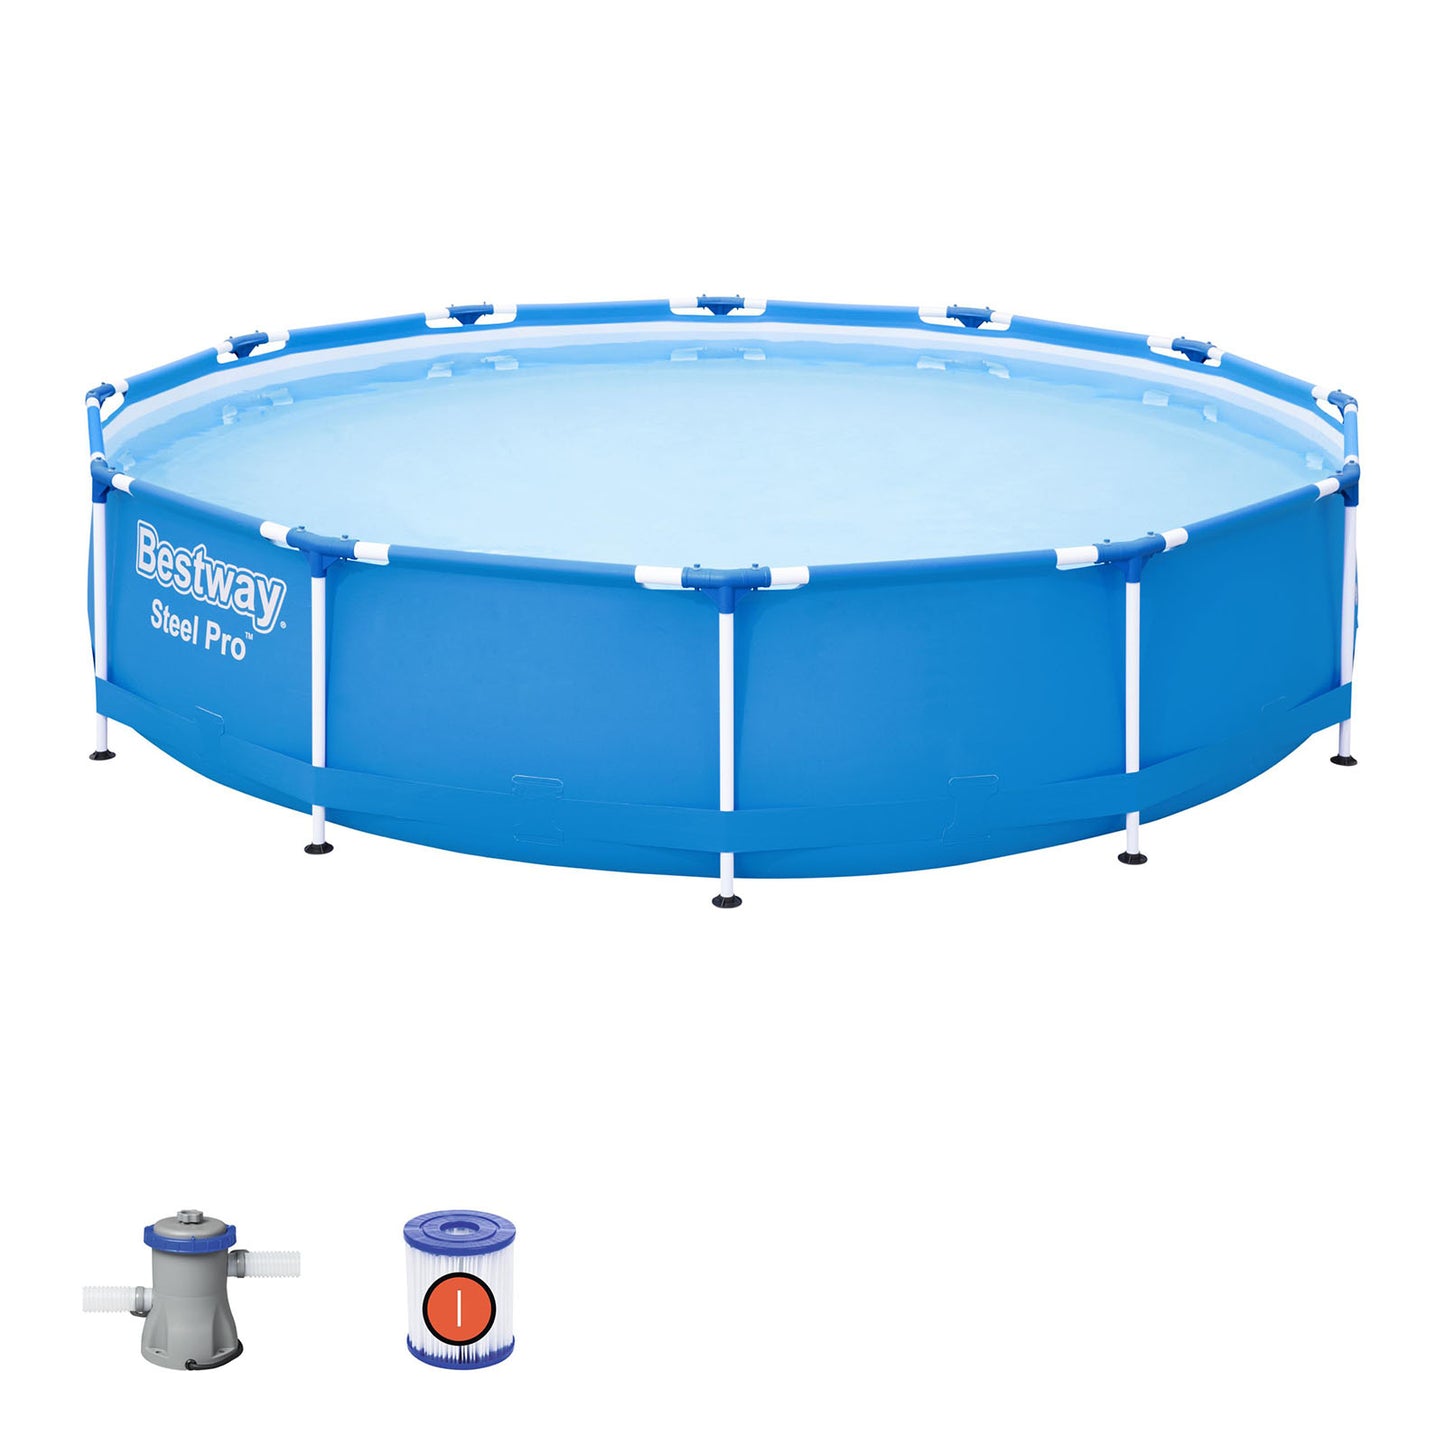 Bestway Steel Pro Round Above Ground Pool with Filter Pump - 3.66m x 76cm